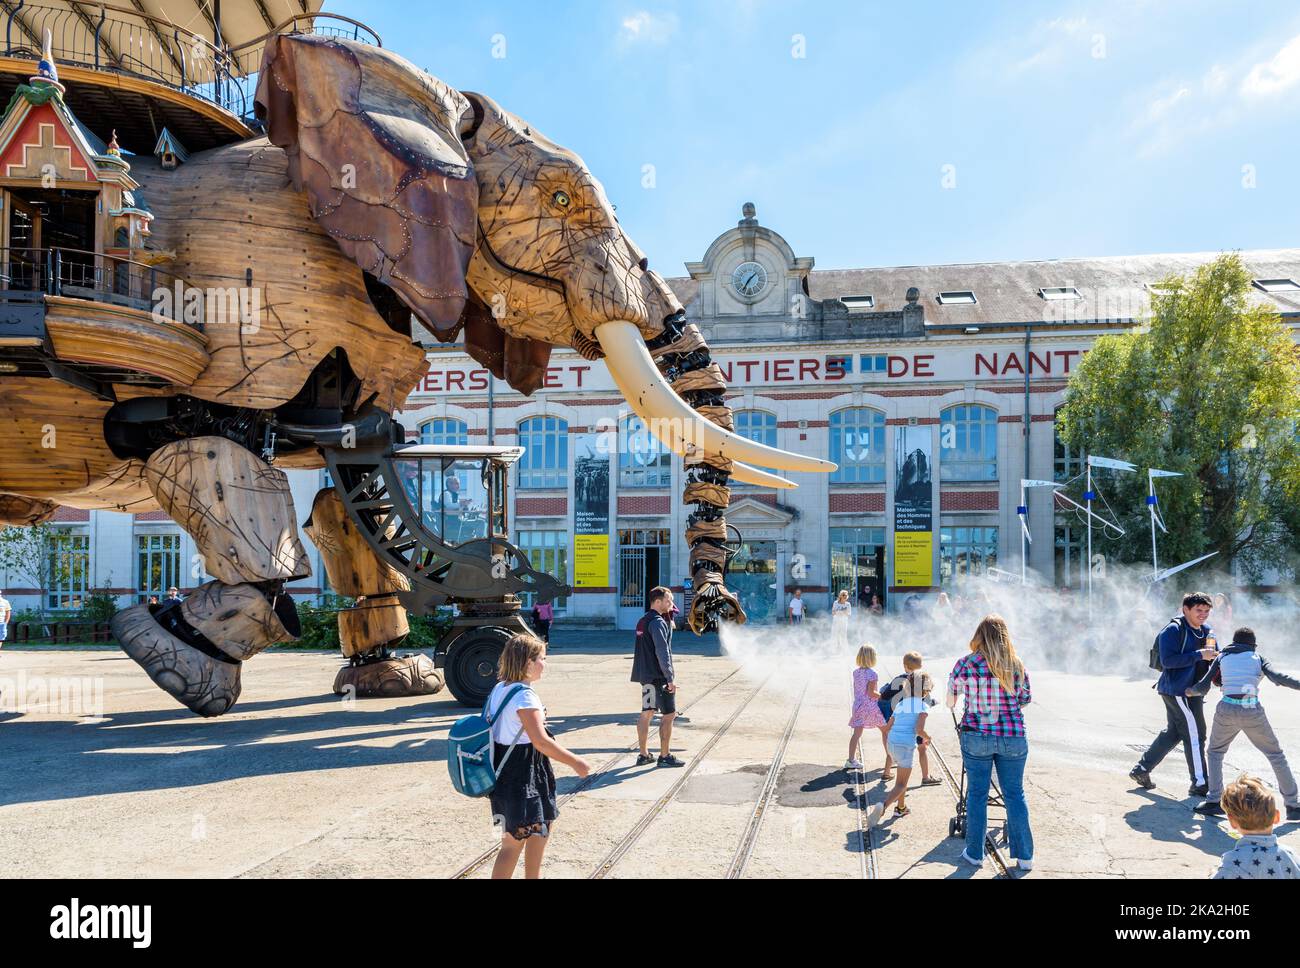 Die riesige Elefantenpuppe, die zu den Maschinen der Insel Nantes gehört, sprüht Wasser mit ihrem Rüssel auf die Zuschauer entlang des Gebäudes der Werften. Stockfoto